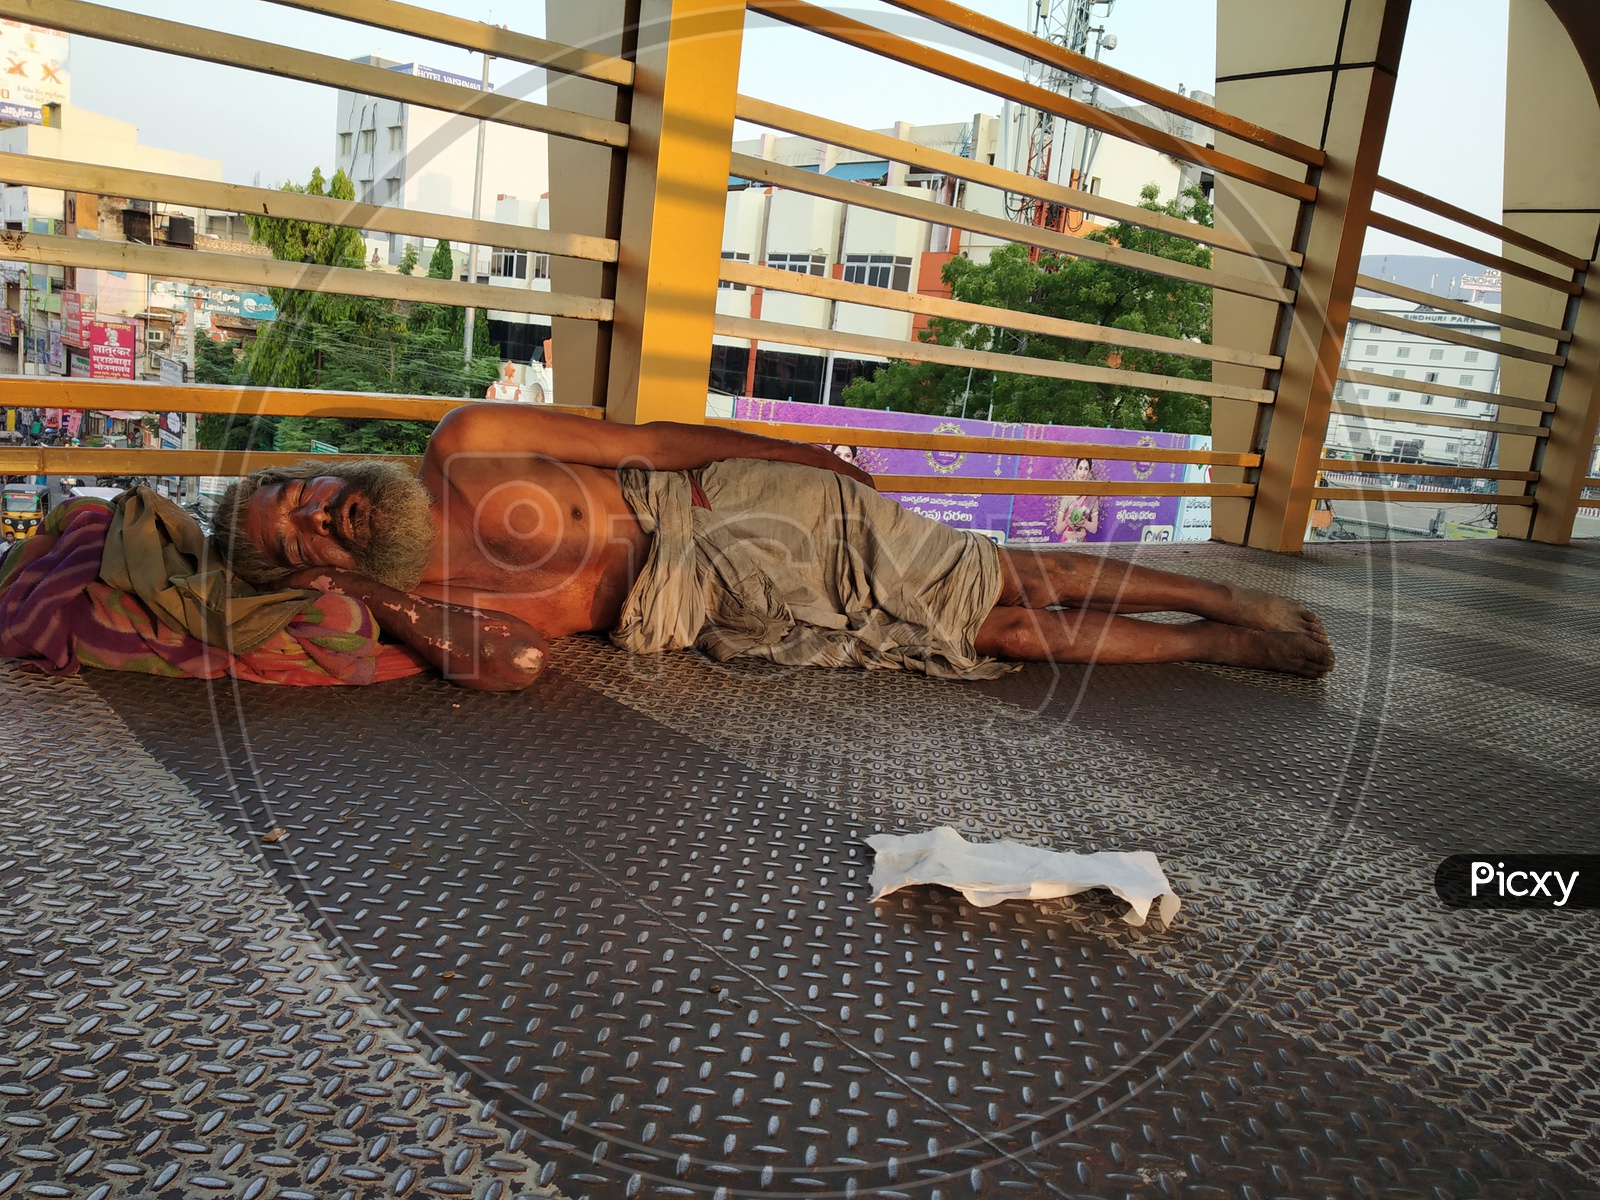 Indian beggar sleeping on the floor